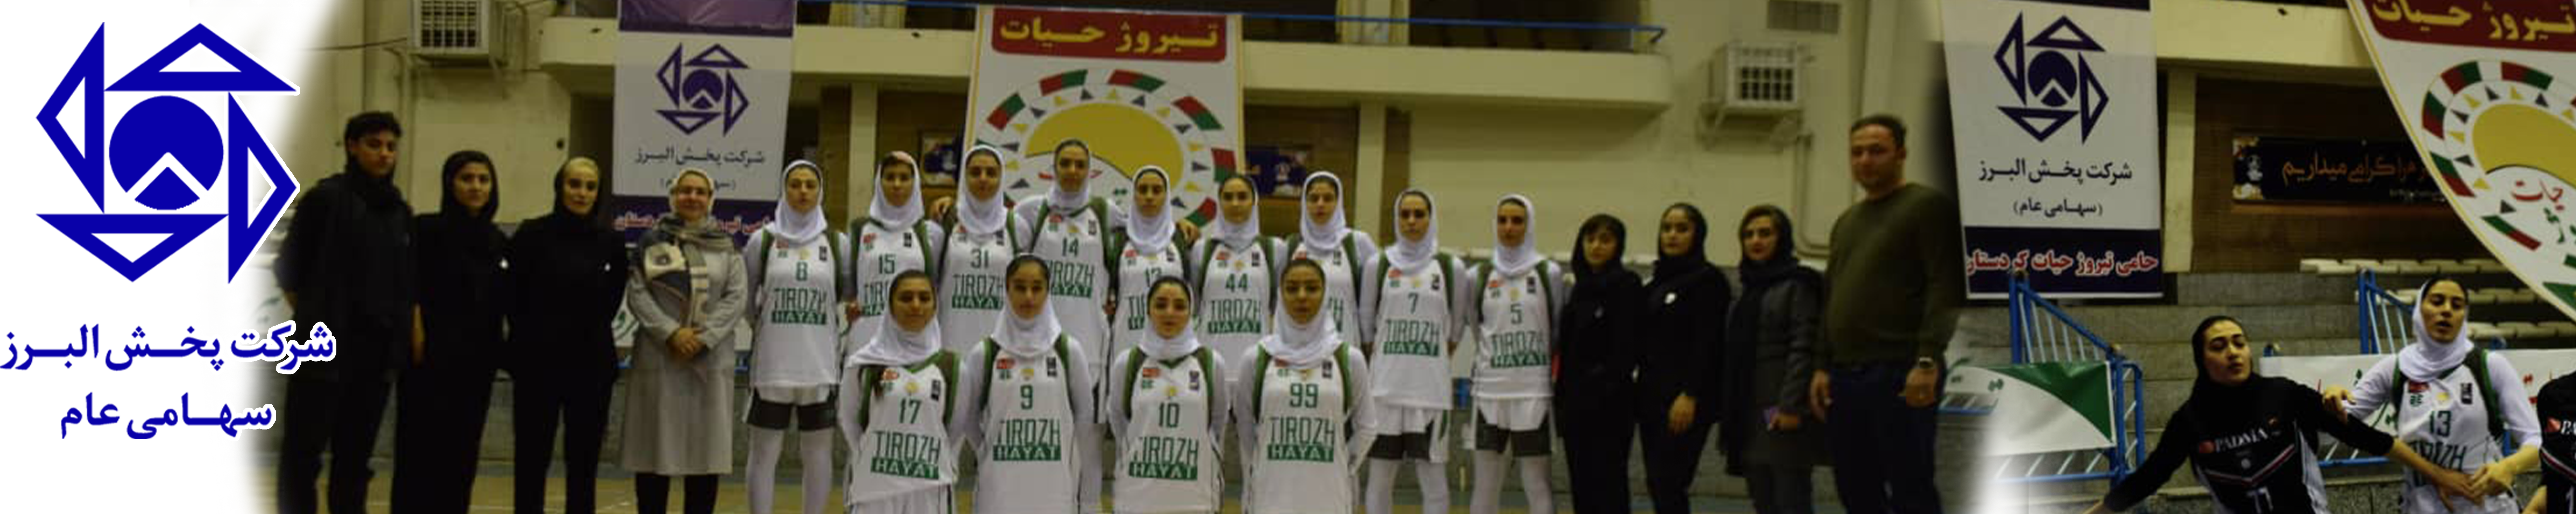 پیروزی تیم بسکتبال بانوان تیروژ حیات کردستان